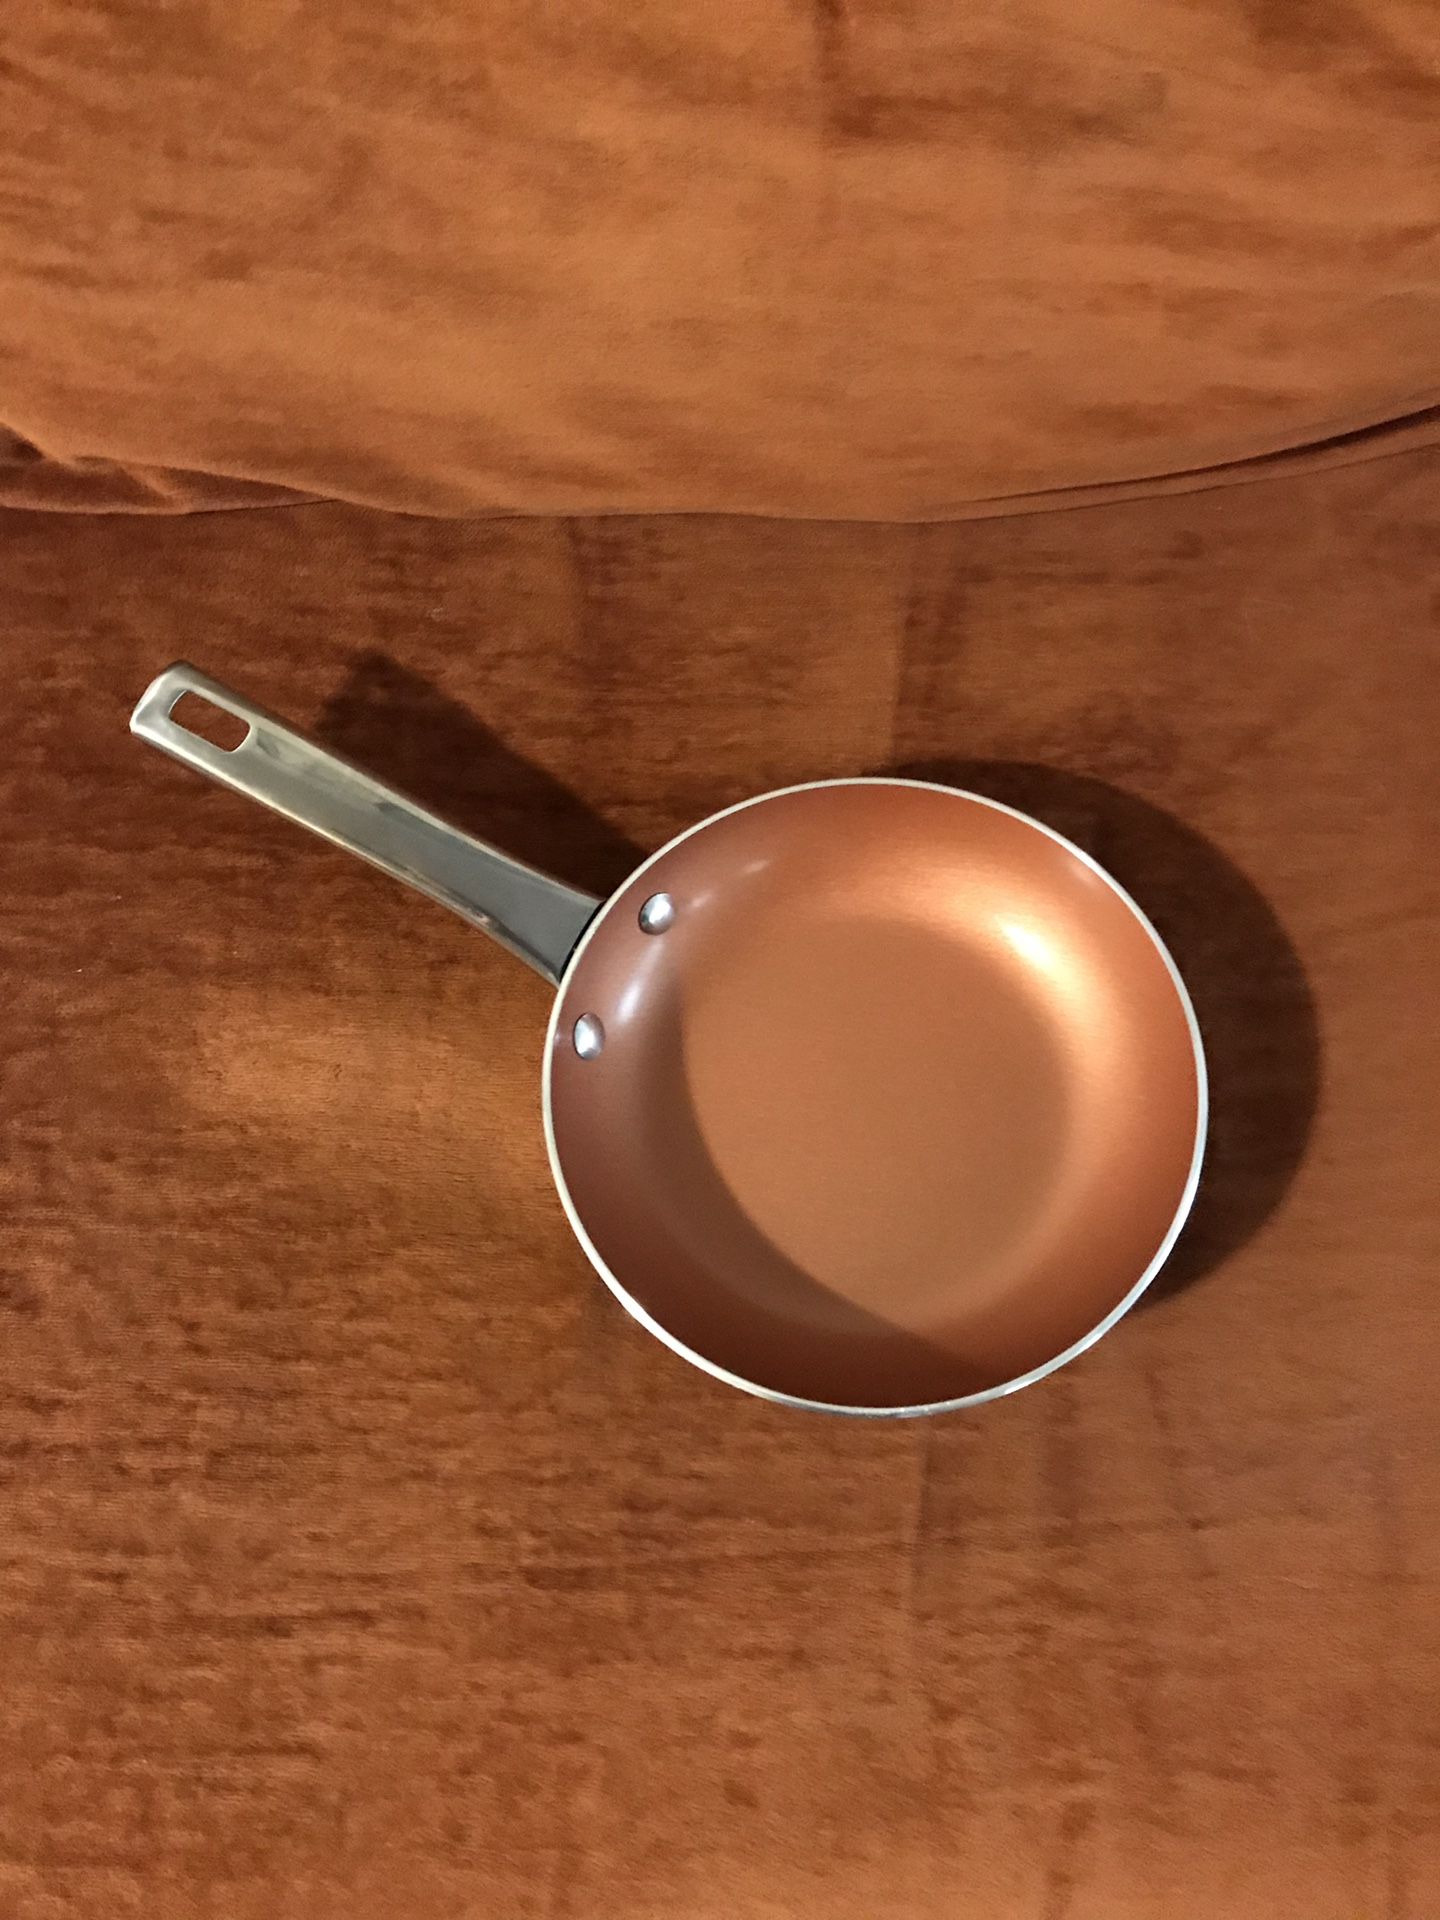 Cook’s Essential 8” Ceramic Non-Stick Pan